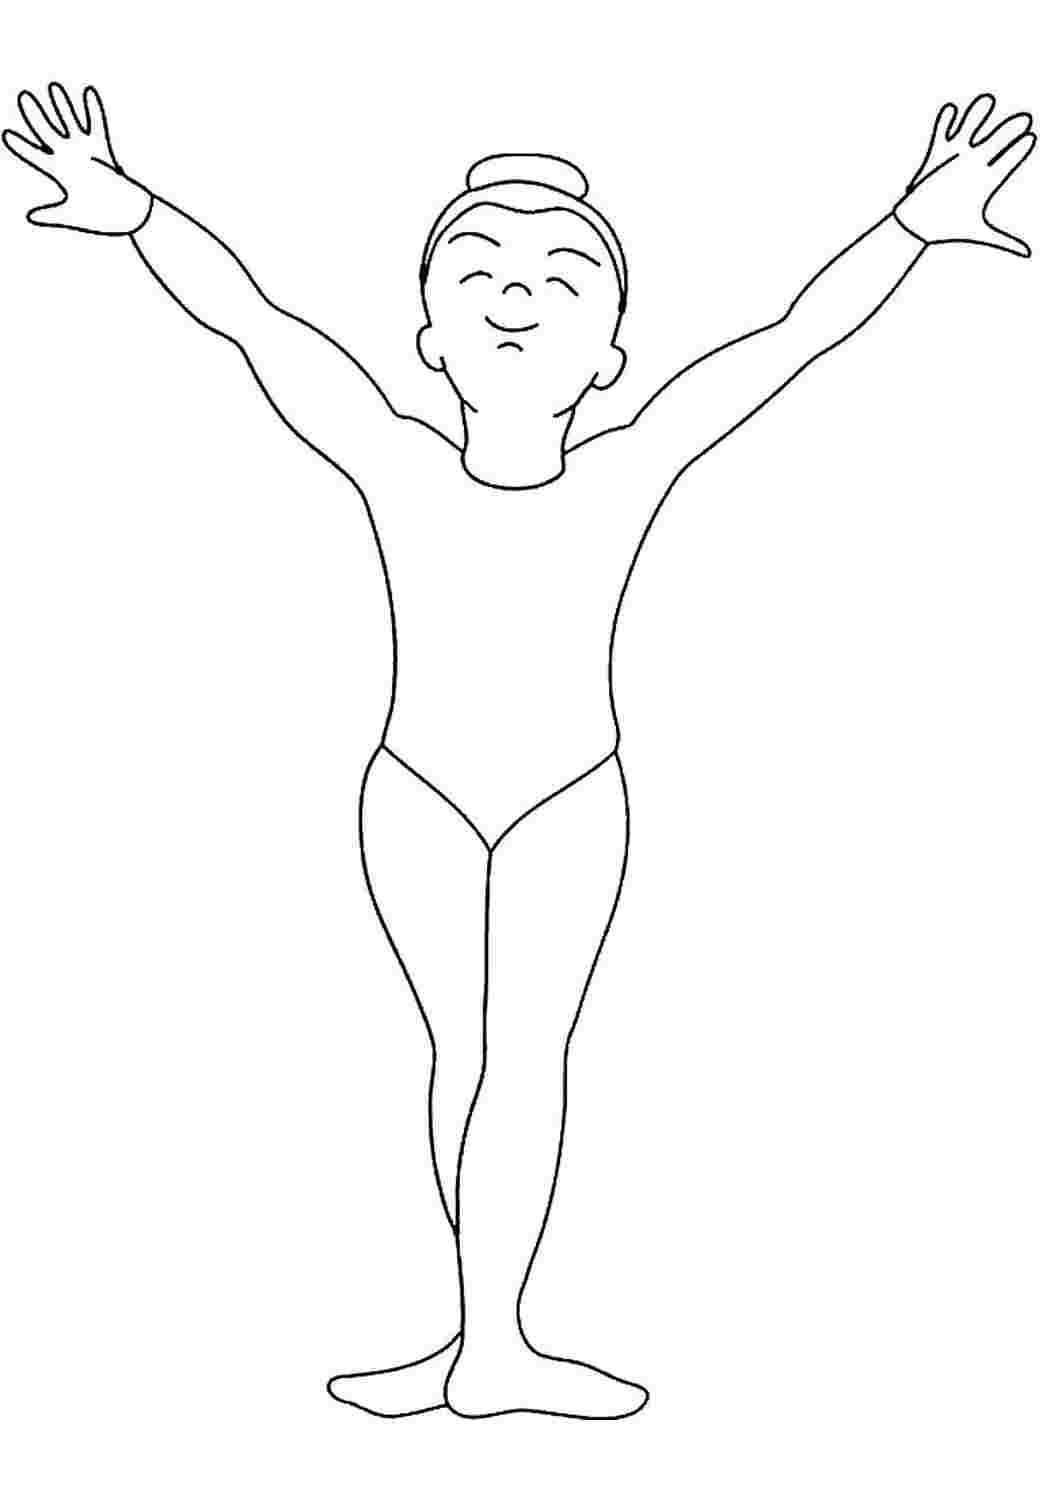 Раскраска детская гимнастика